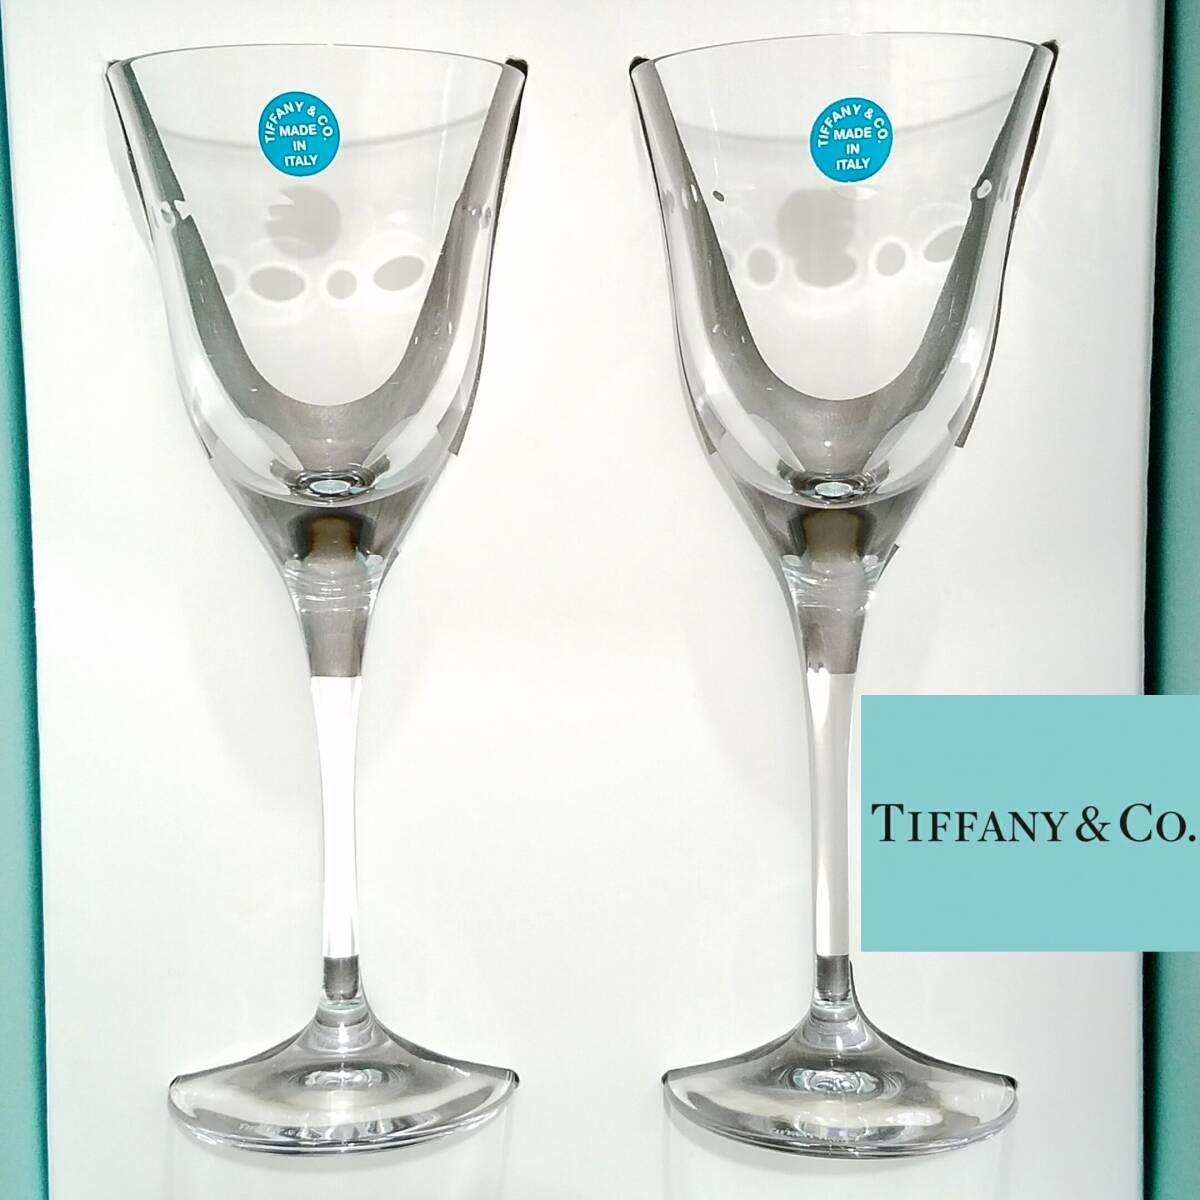 新品 Tiffany & Co. グラマシーワイン 2客セット国内正規品イタリア製ワイングラス ペア クリスタルガラス MADE IN ITALY ティファニー_画像1